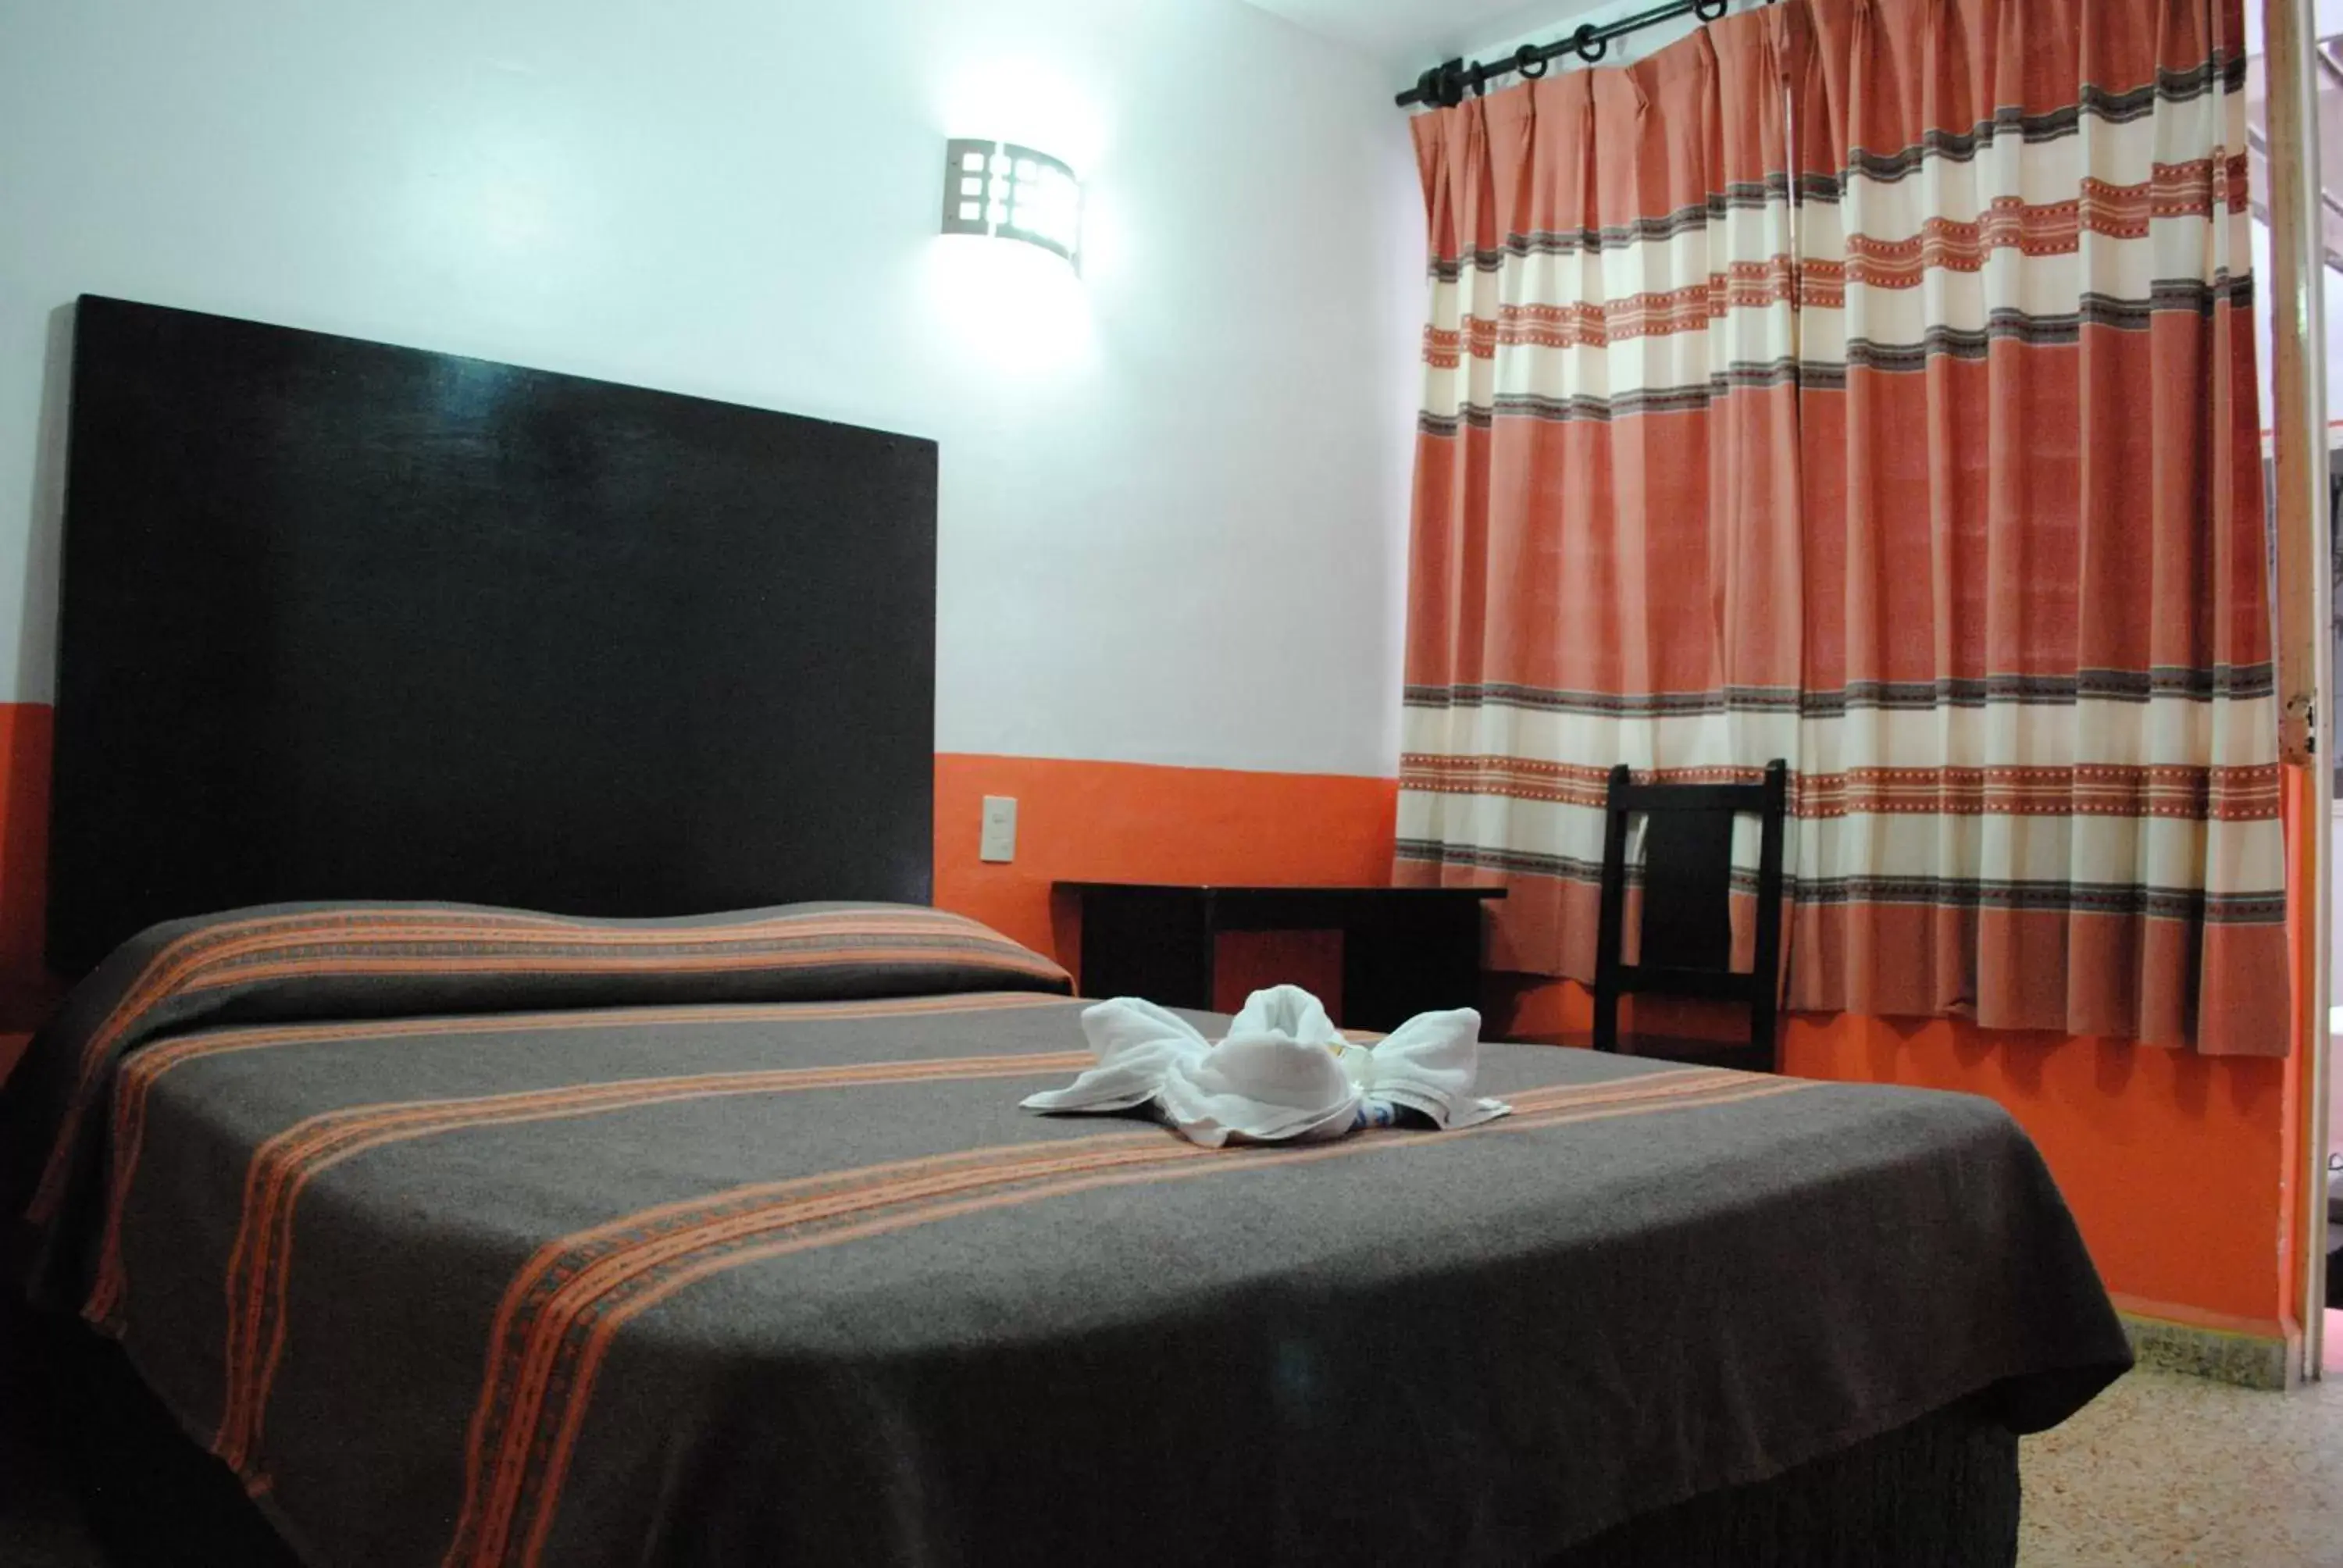 Bedroom, Room Photo in Hotel Jiménez